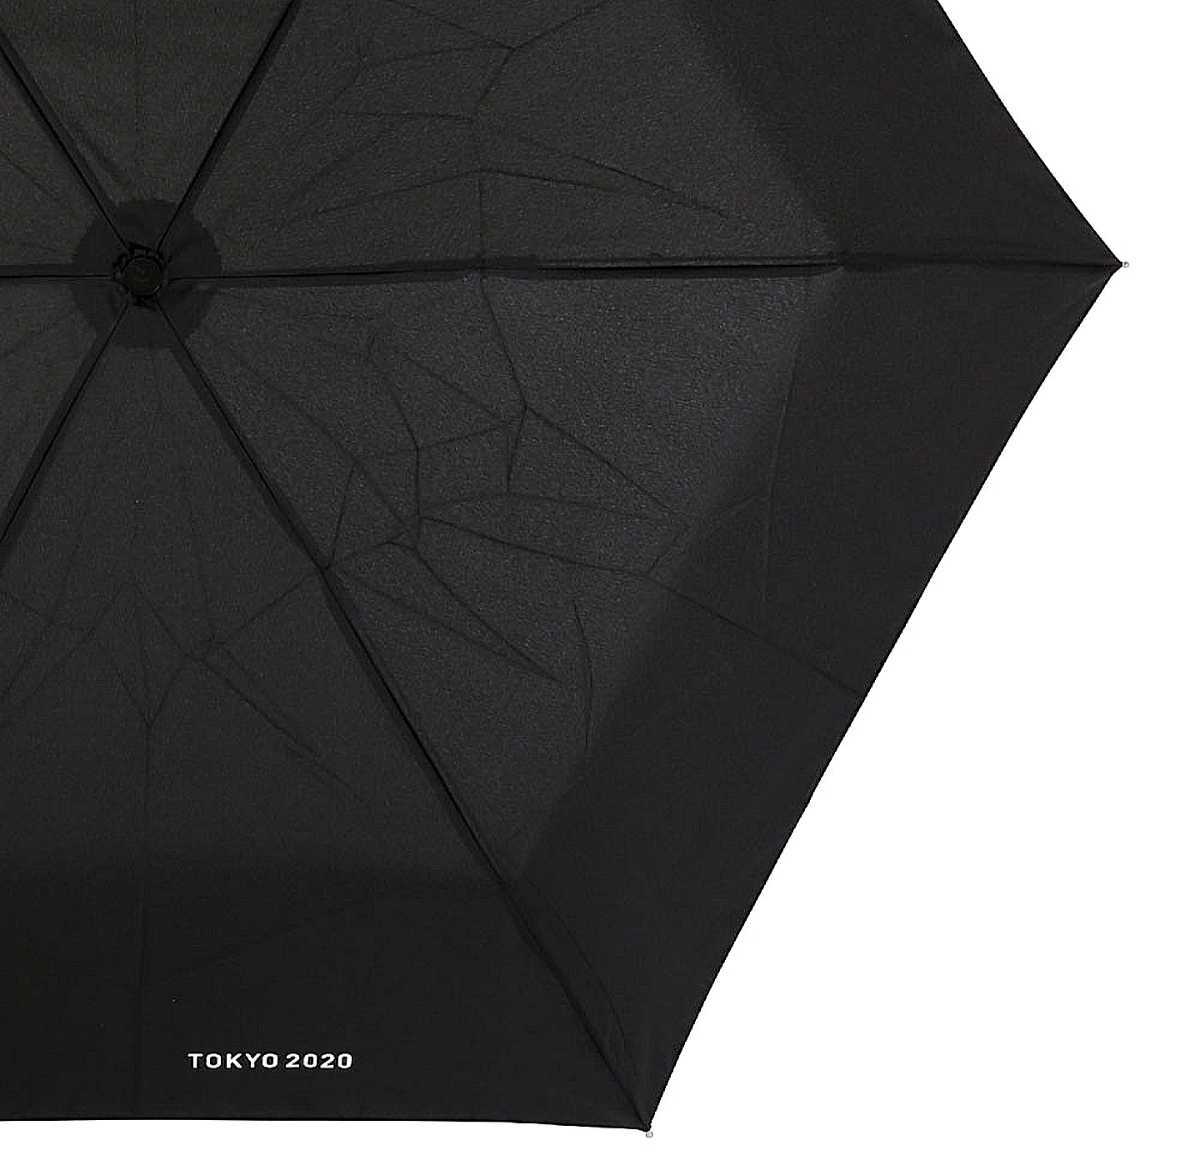 《 ブラック 東京 オリンピック 降りたたみ傘 晴雨兼用 》東京2020 エンブレム 折り畳み傘 日傘 雨傘 男性用 男女兼用 撥水加工 傘 紳士 黒